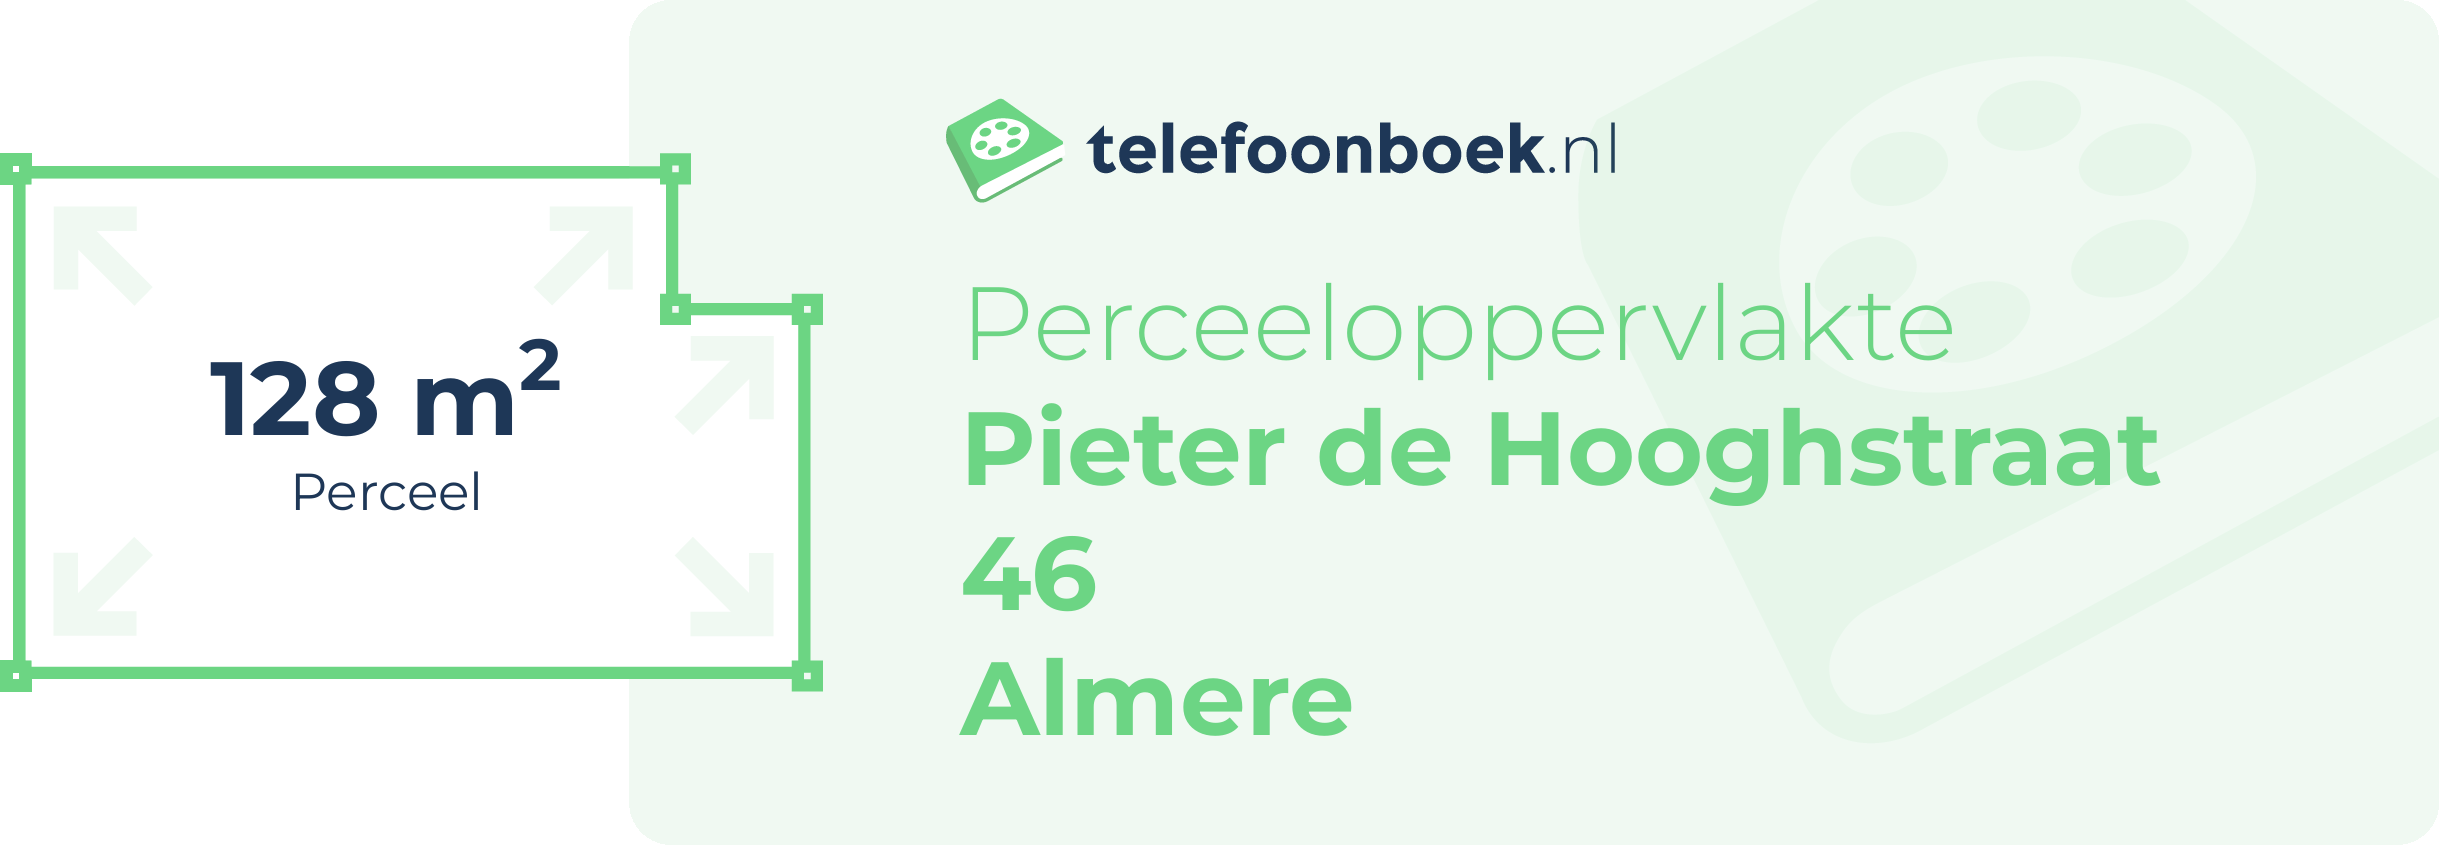 Perceeloppervlakte Pieter De Hooghstraat 46 Almere